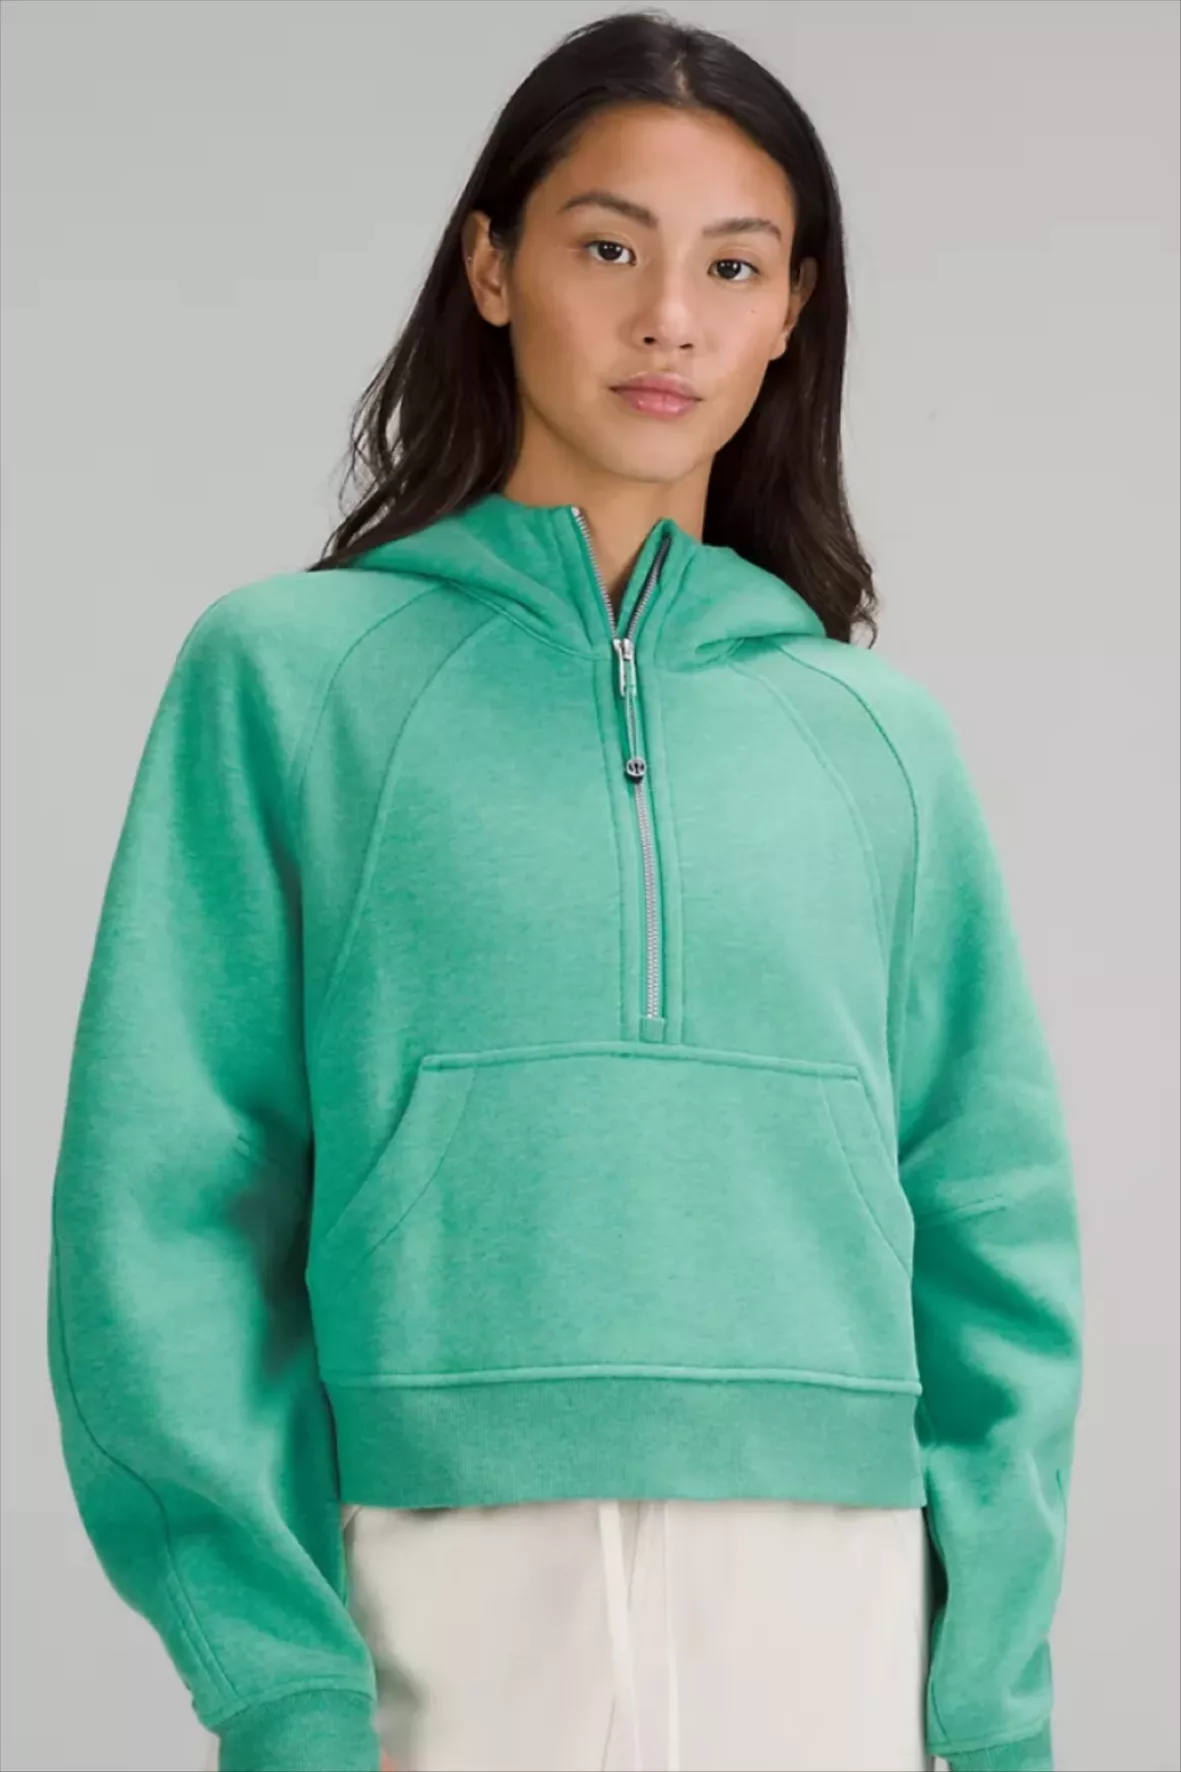 Scuba Oversized Half-Zip Hoodie, Women's Hoodies & Sweatshirts